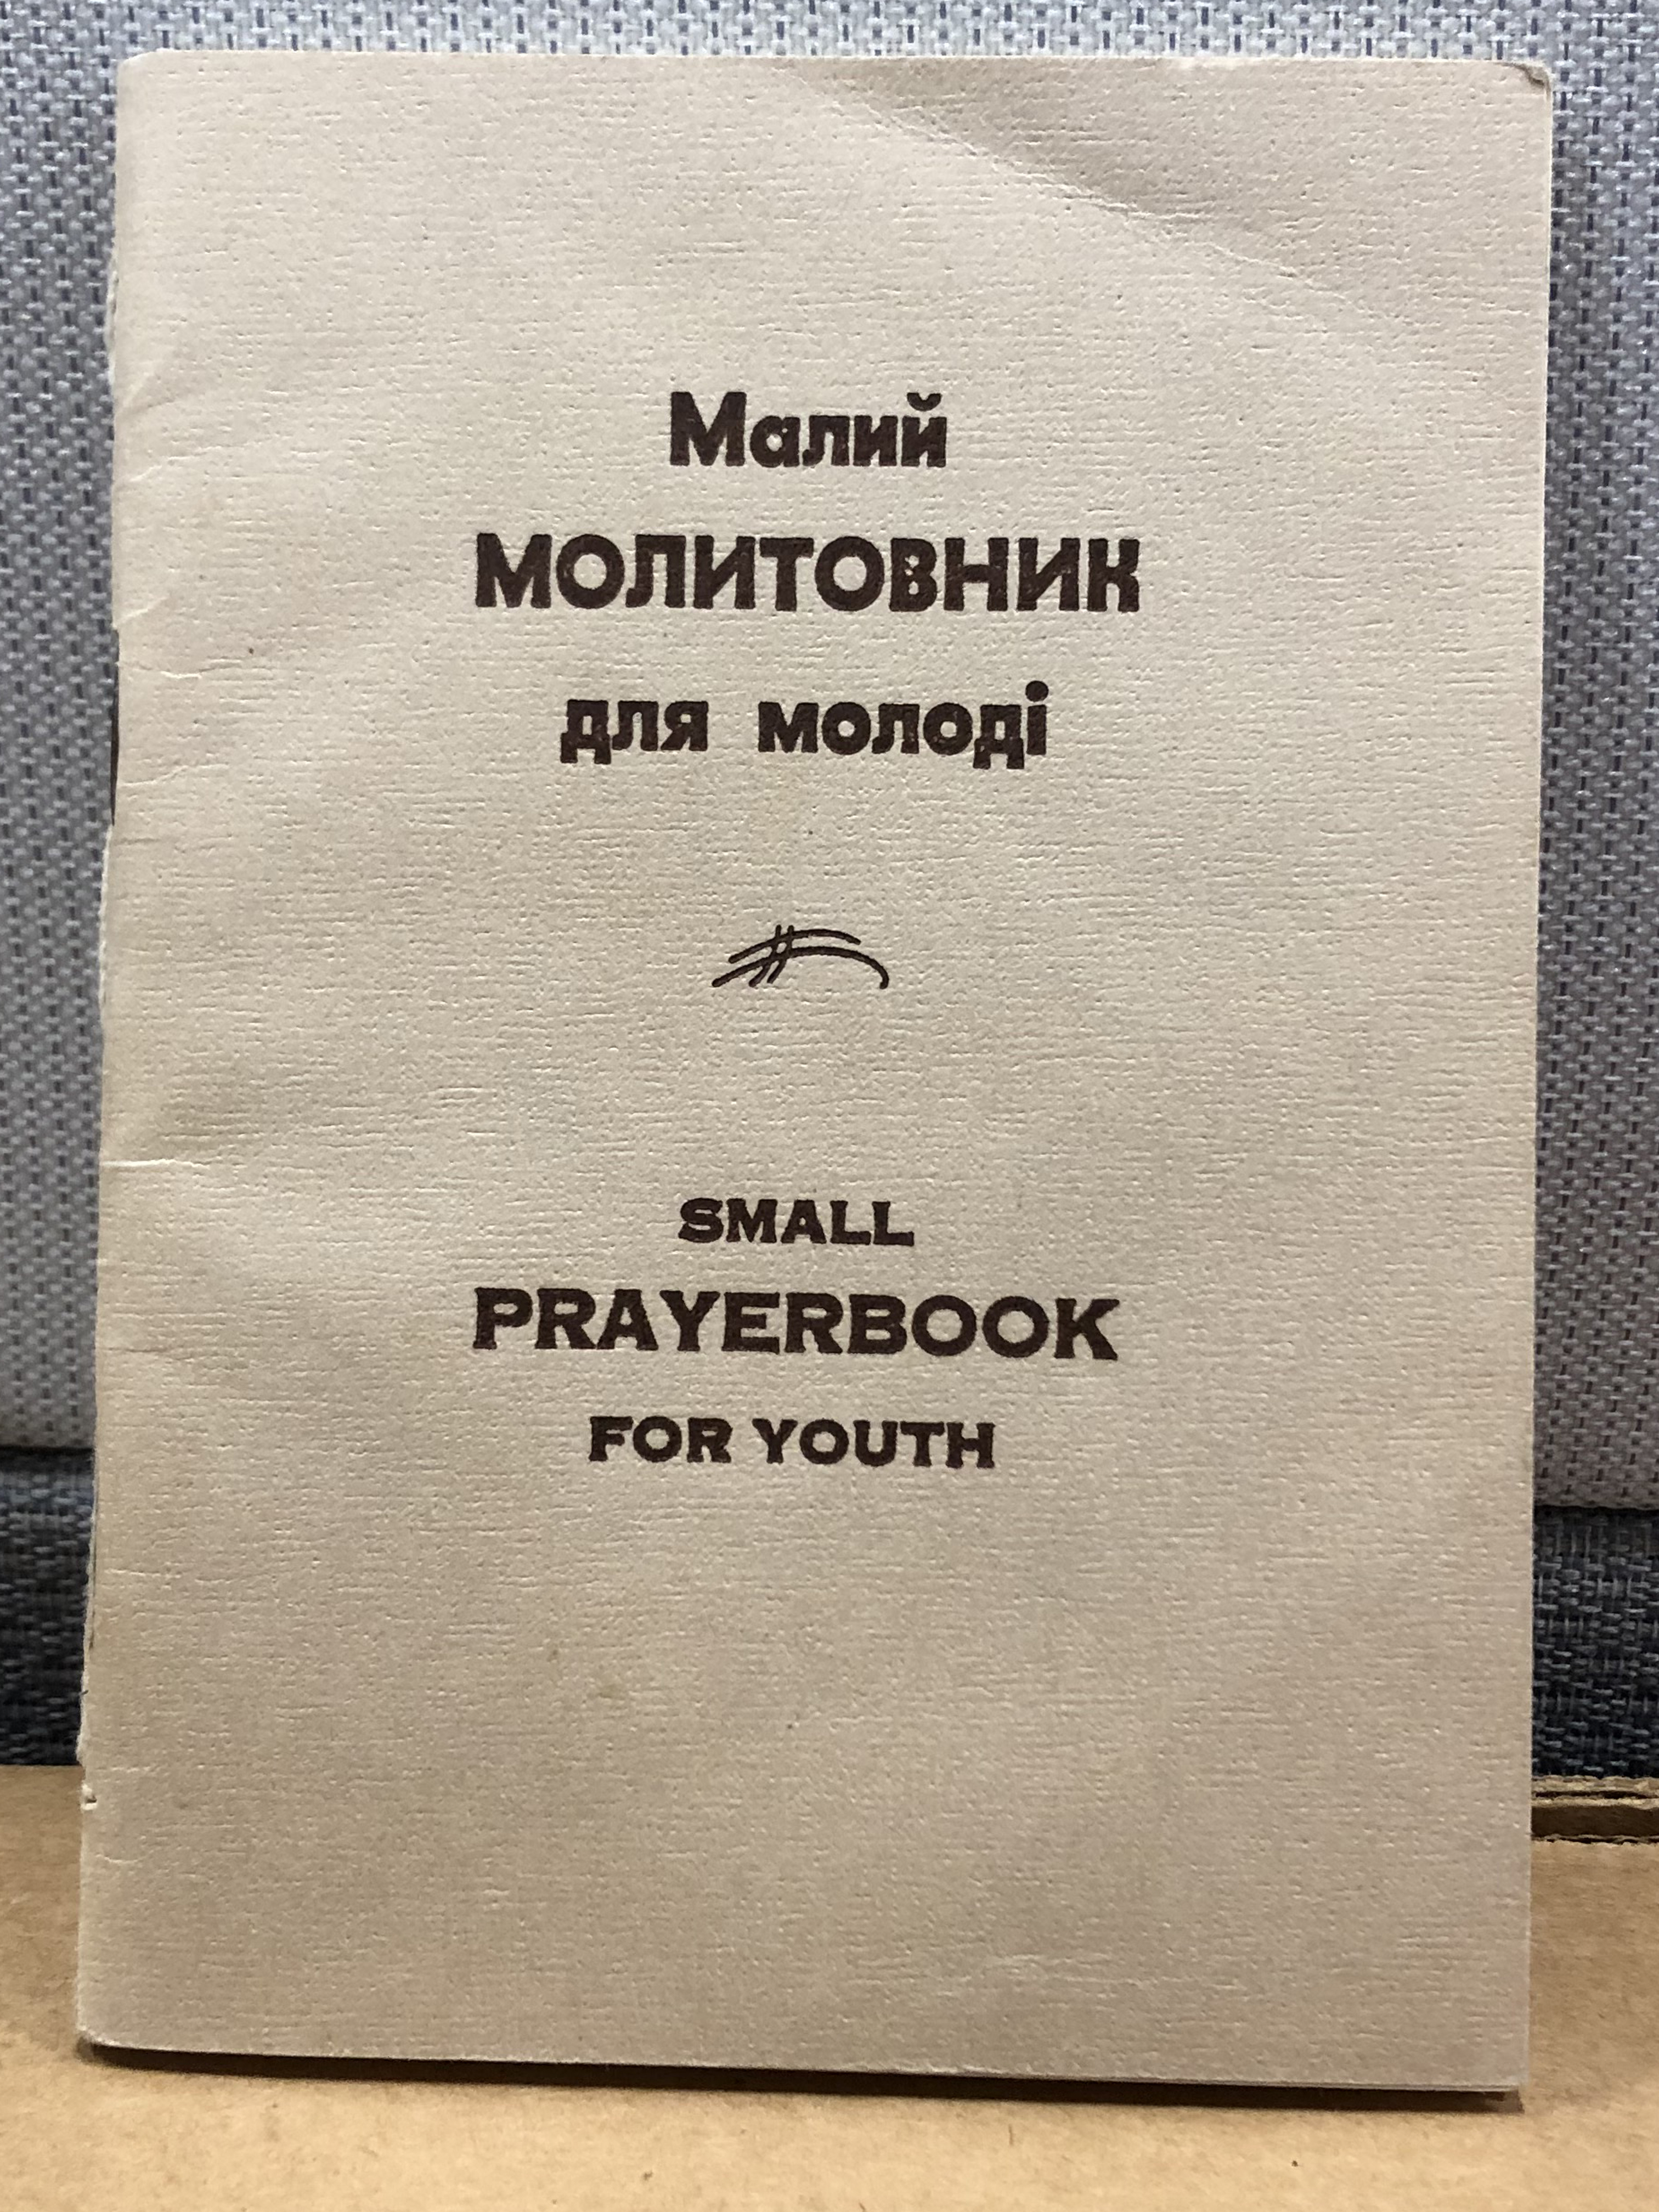 Ukrainian language pamphlet